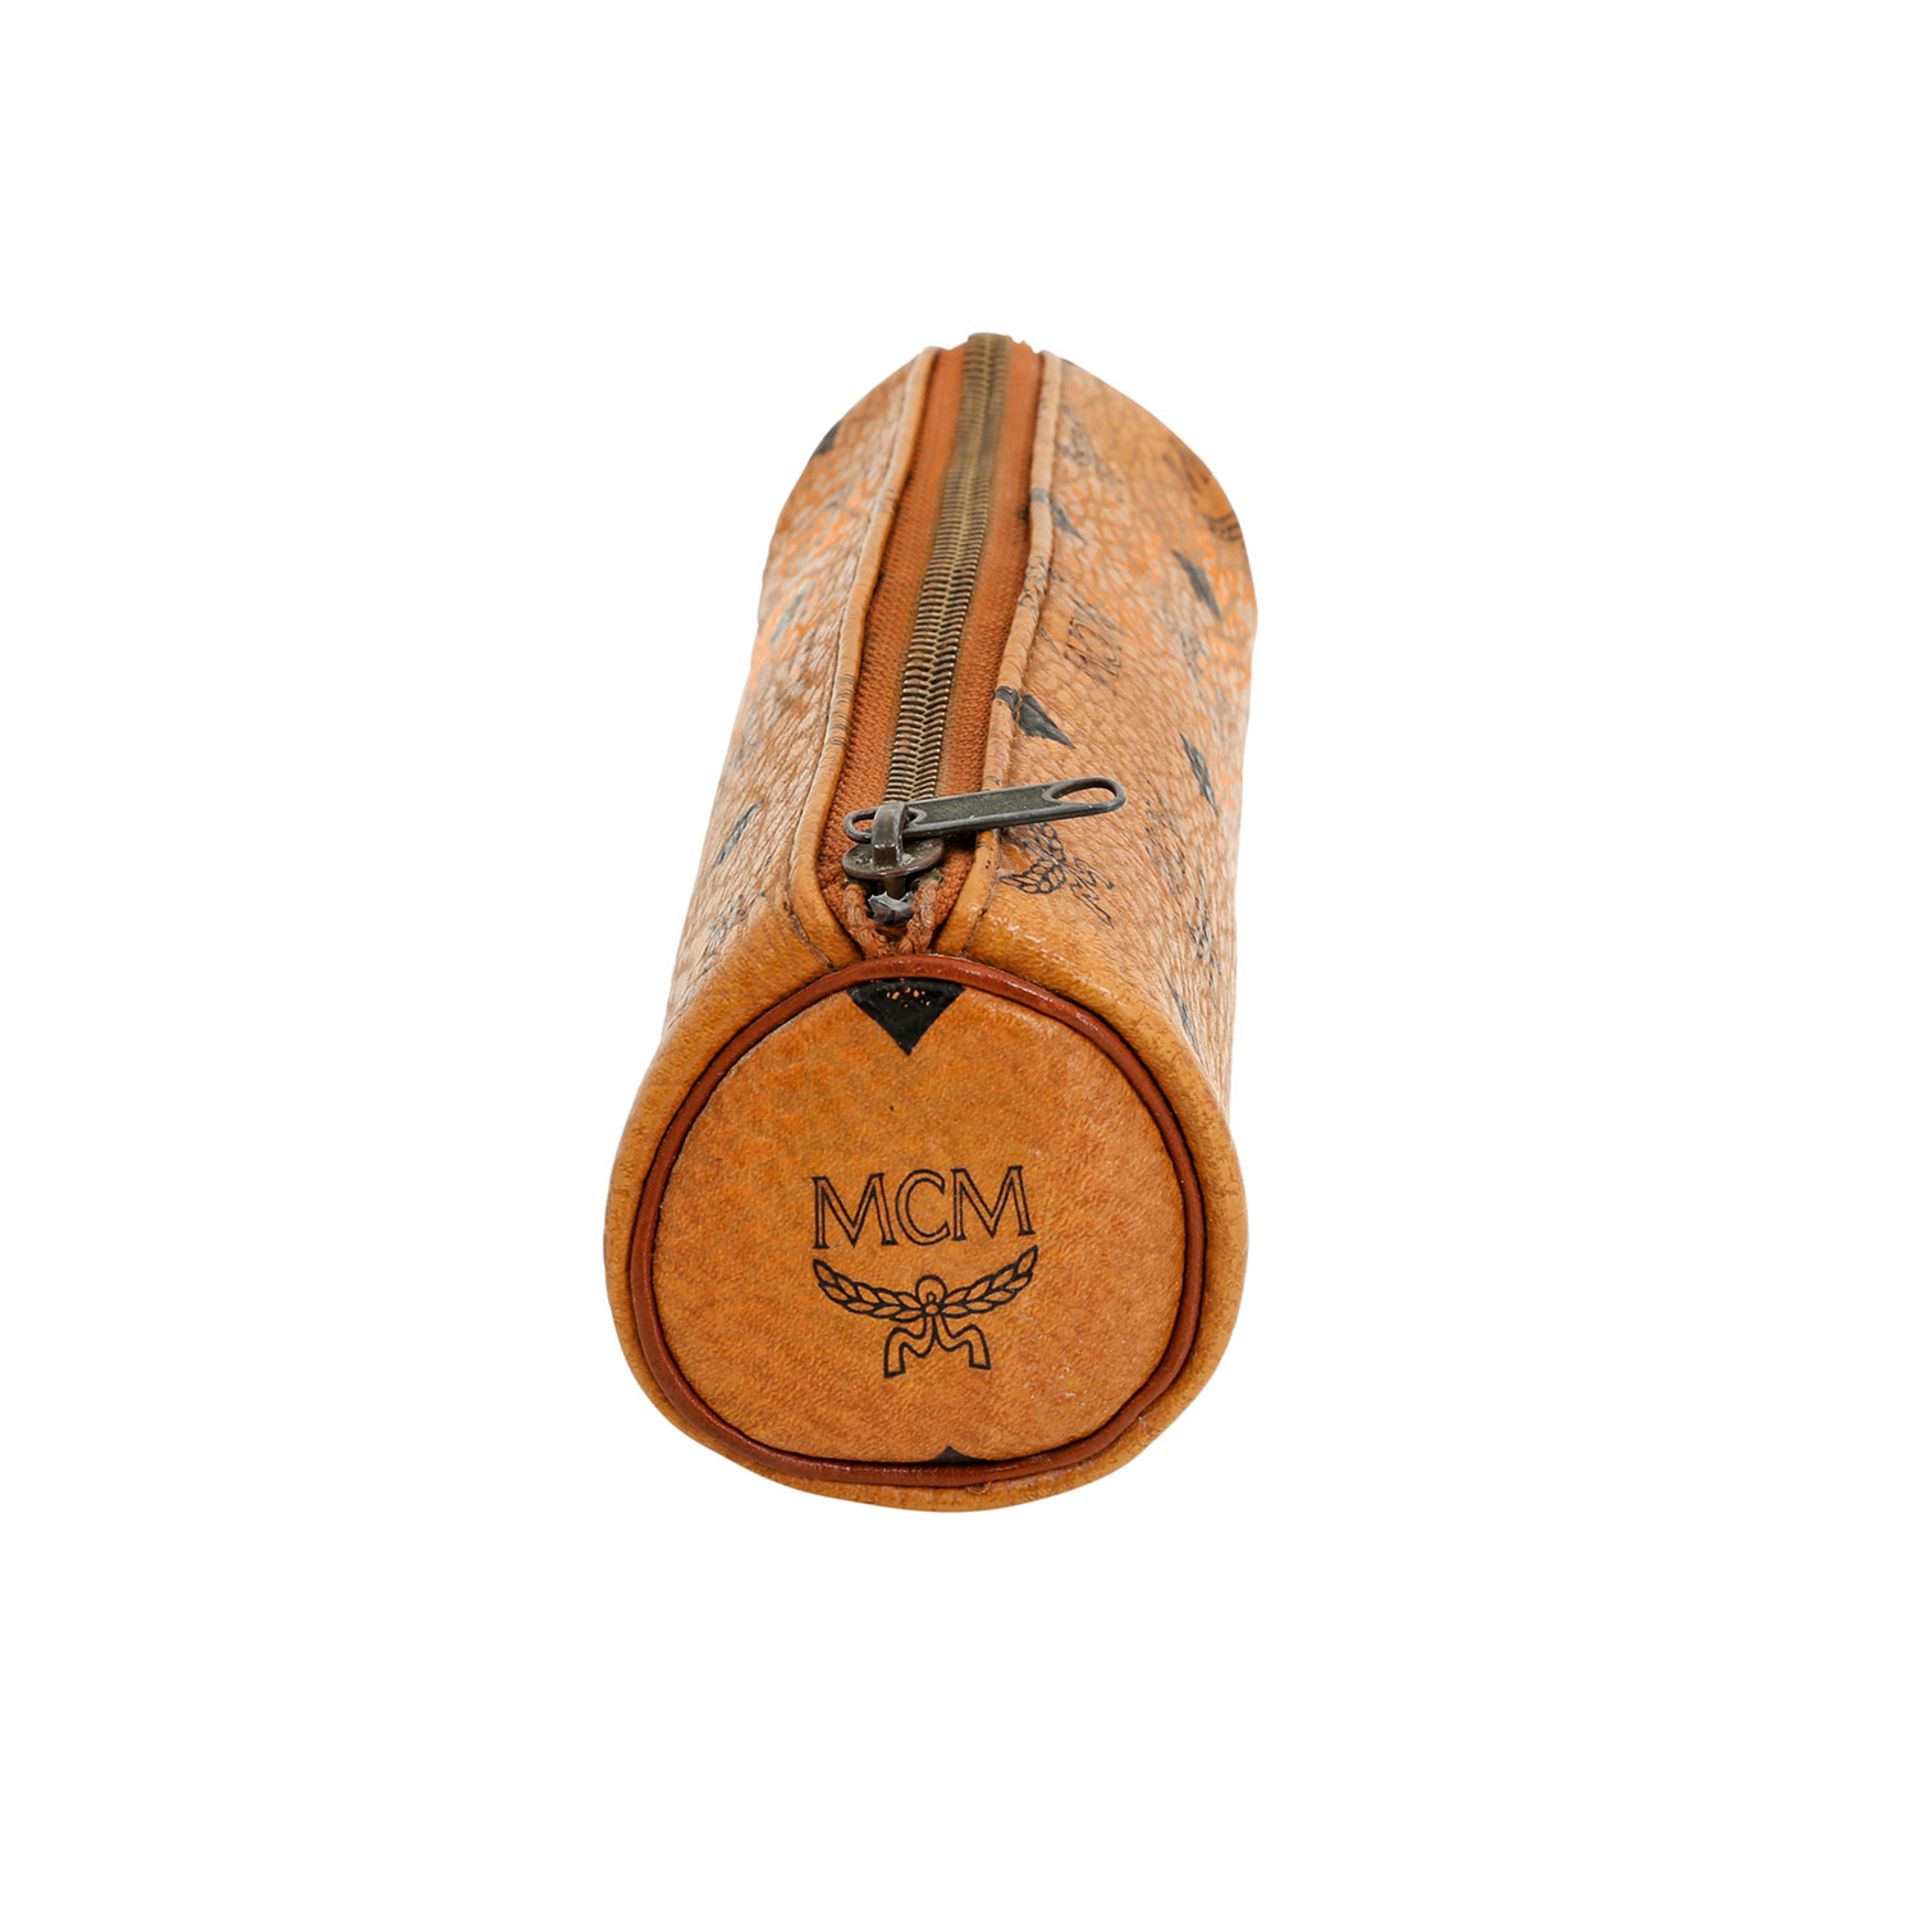 MCM VINTAGE Mäppchen. 80er Jahre. Heritage Serie in Cognacfarben mit Reißverschluss aus Lederimitat. - Bild 3 aus 6